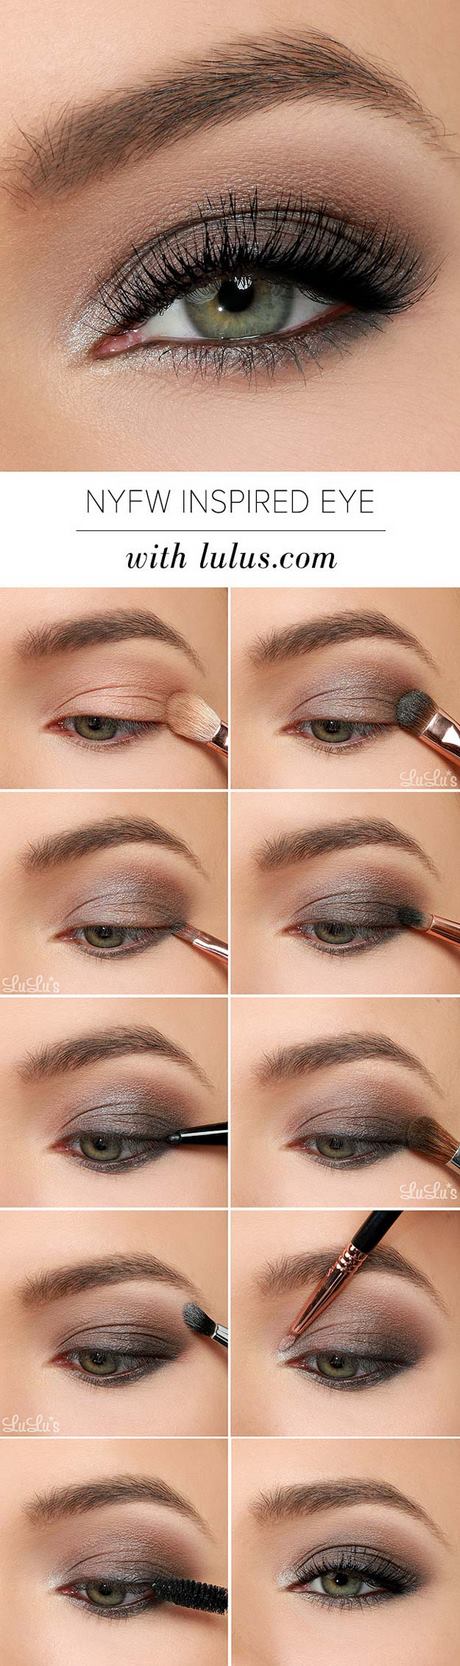 makeup-tutorials-for-eyes-61_8 Make-up tutorials voor ogen